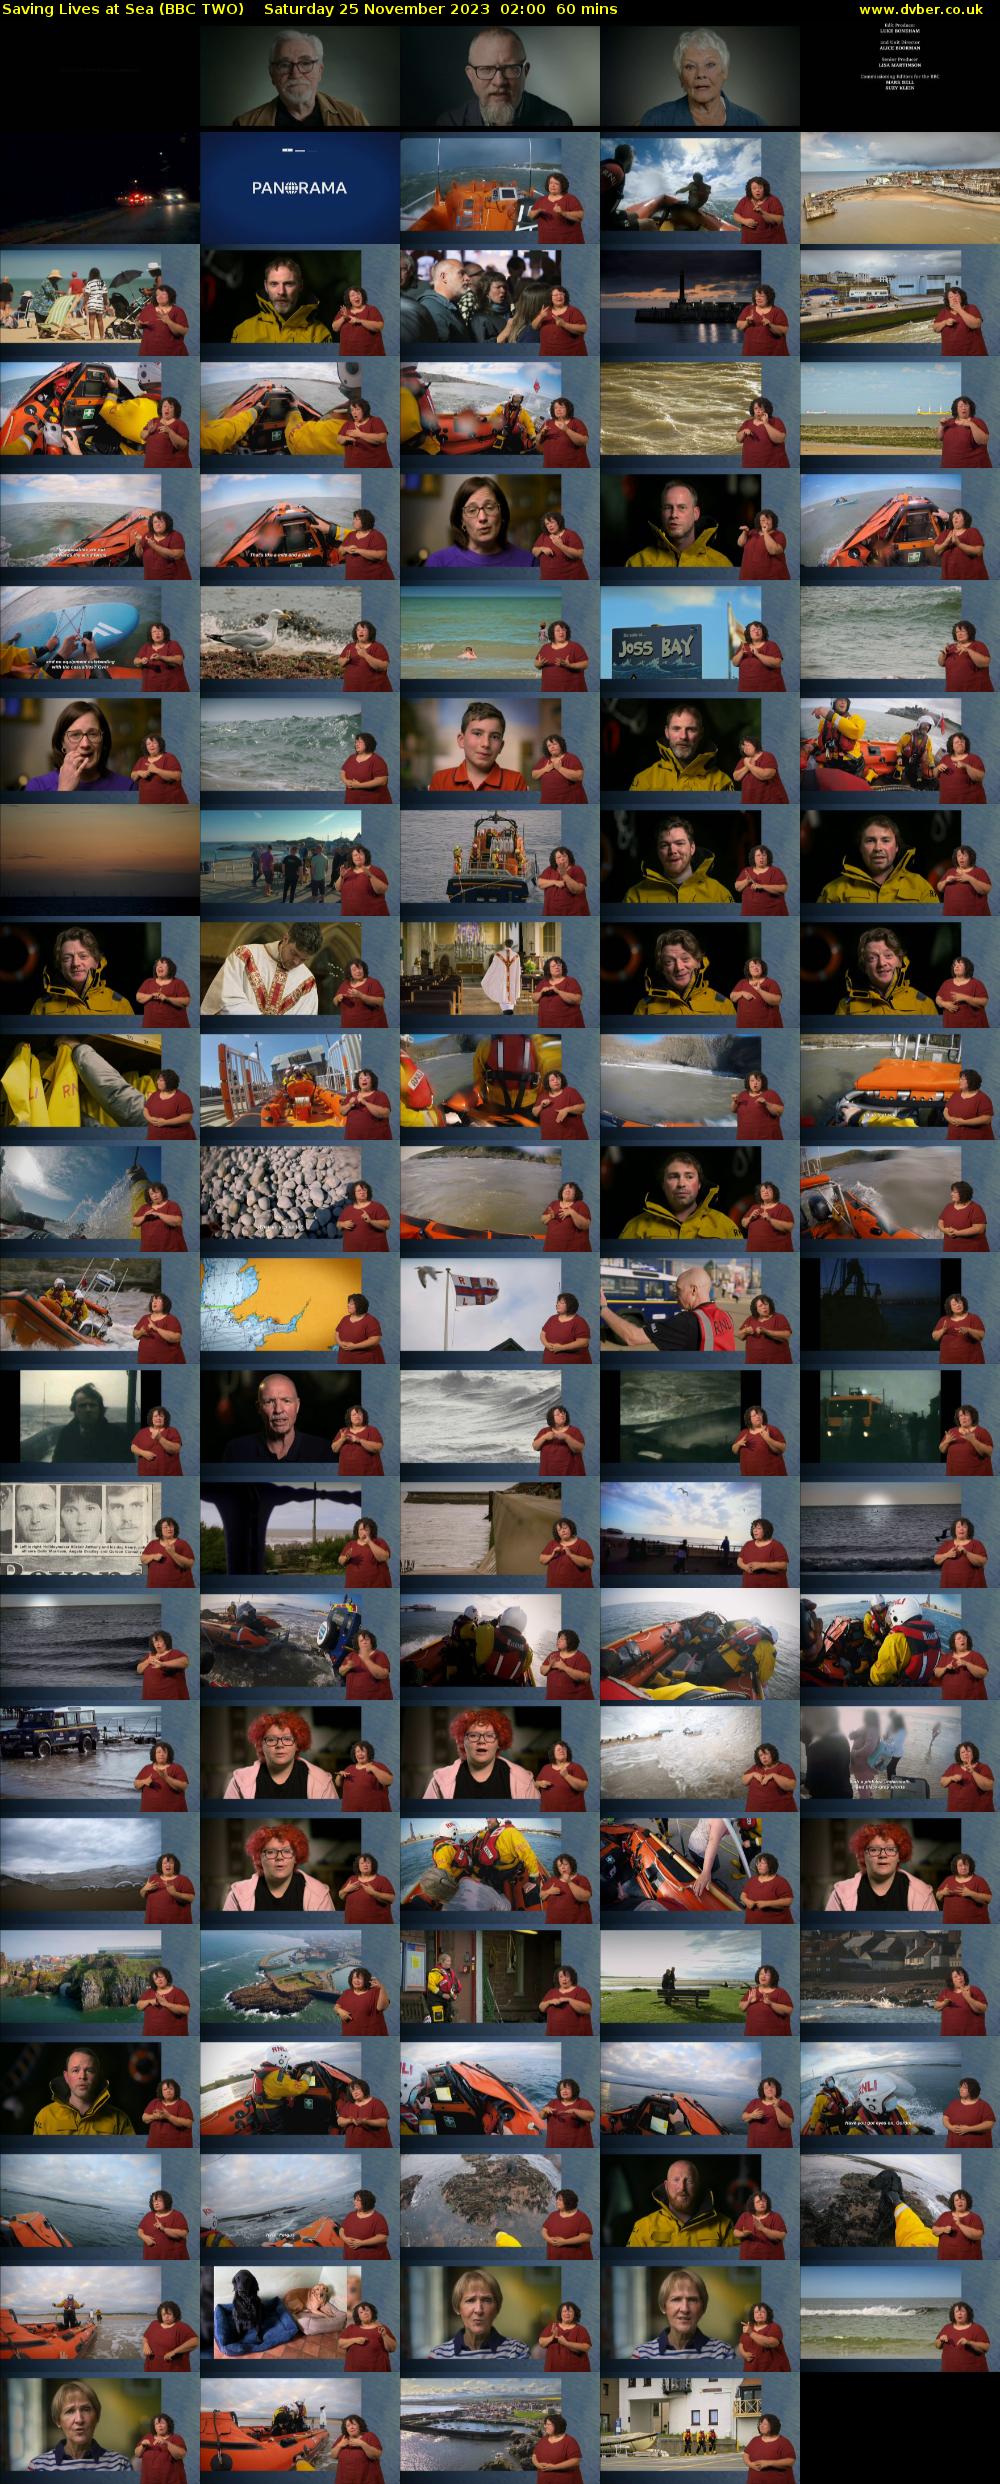 Saving Lives at Sea (BBC TWO) Saturday 25 November 2023 02:00 - 03:00